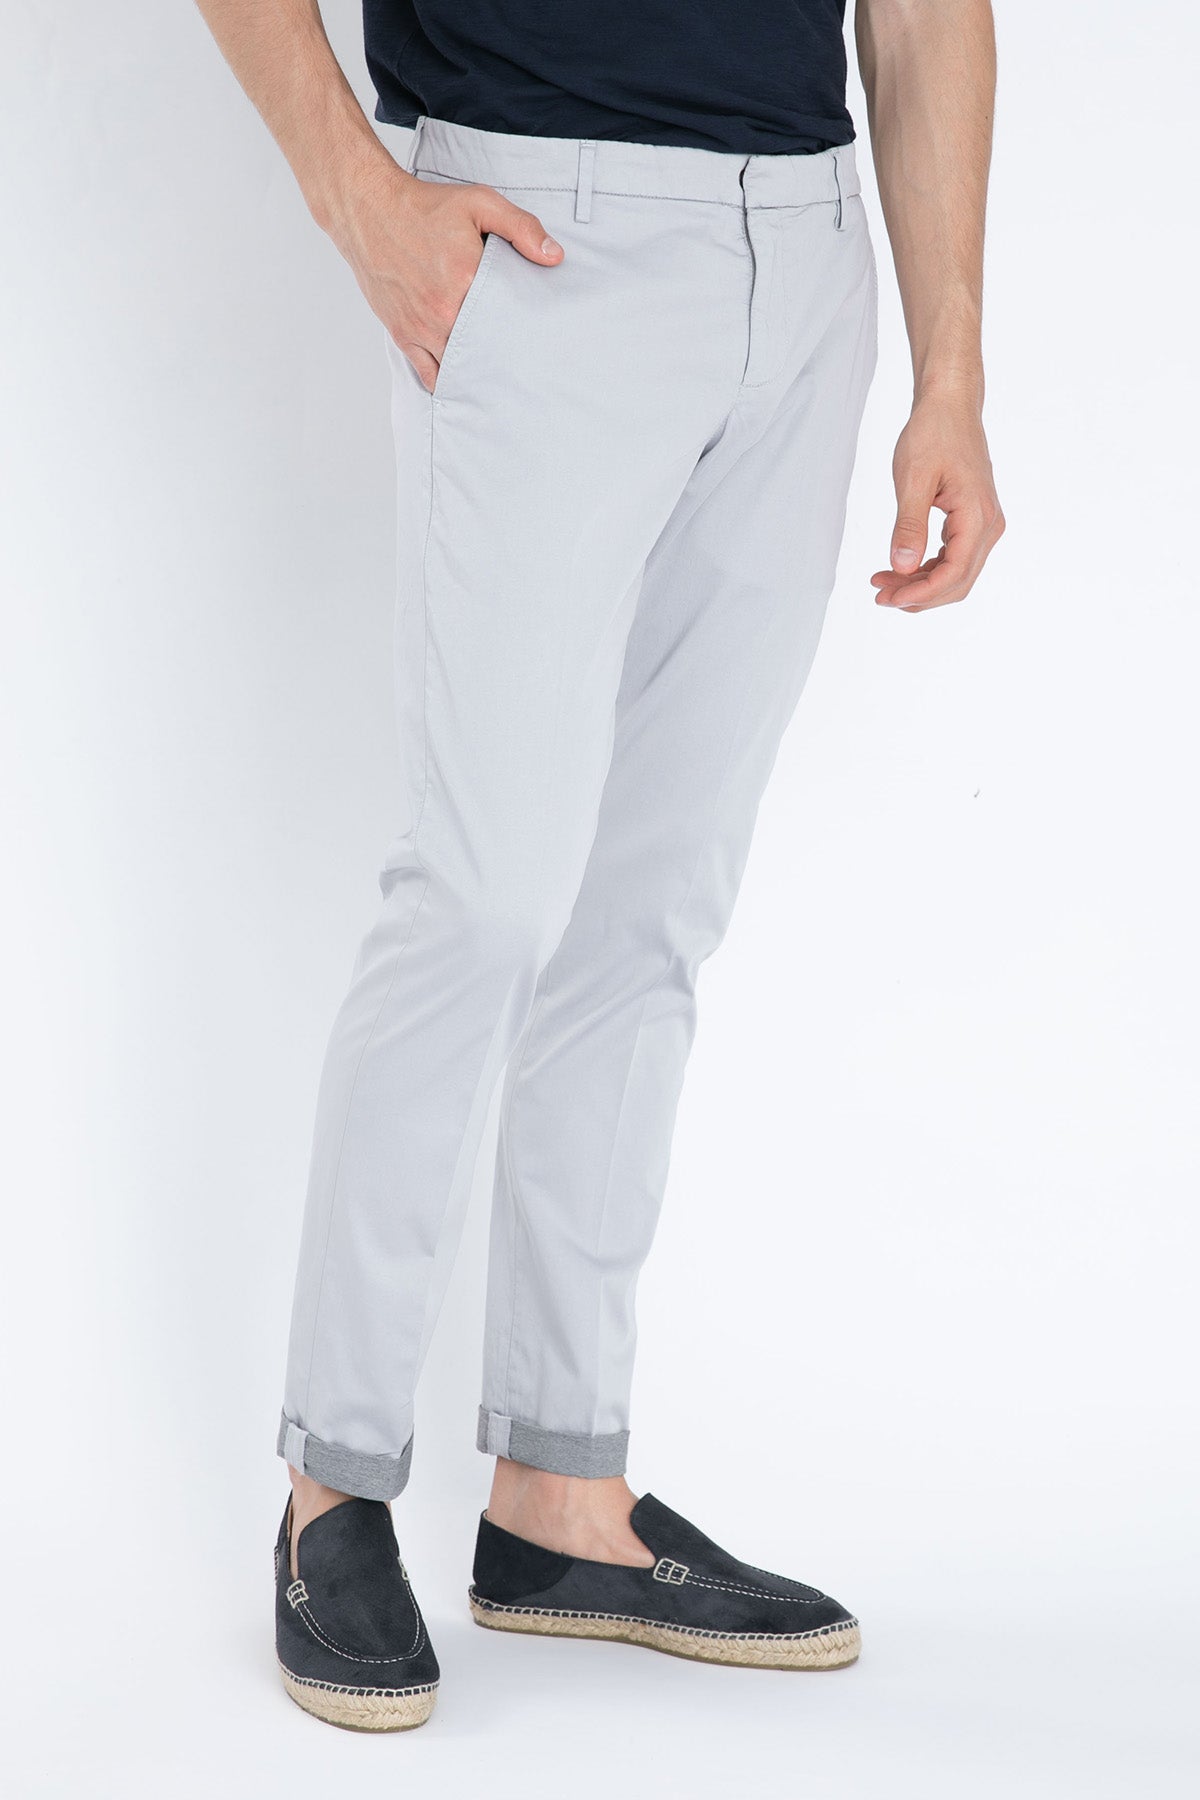 Dondup Yandan Cepli Slim Fit Streç Pantolon-Libas Trendy Fashion Store